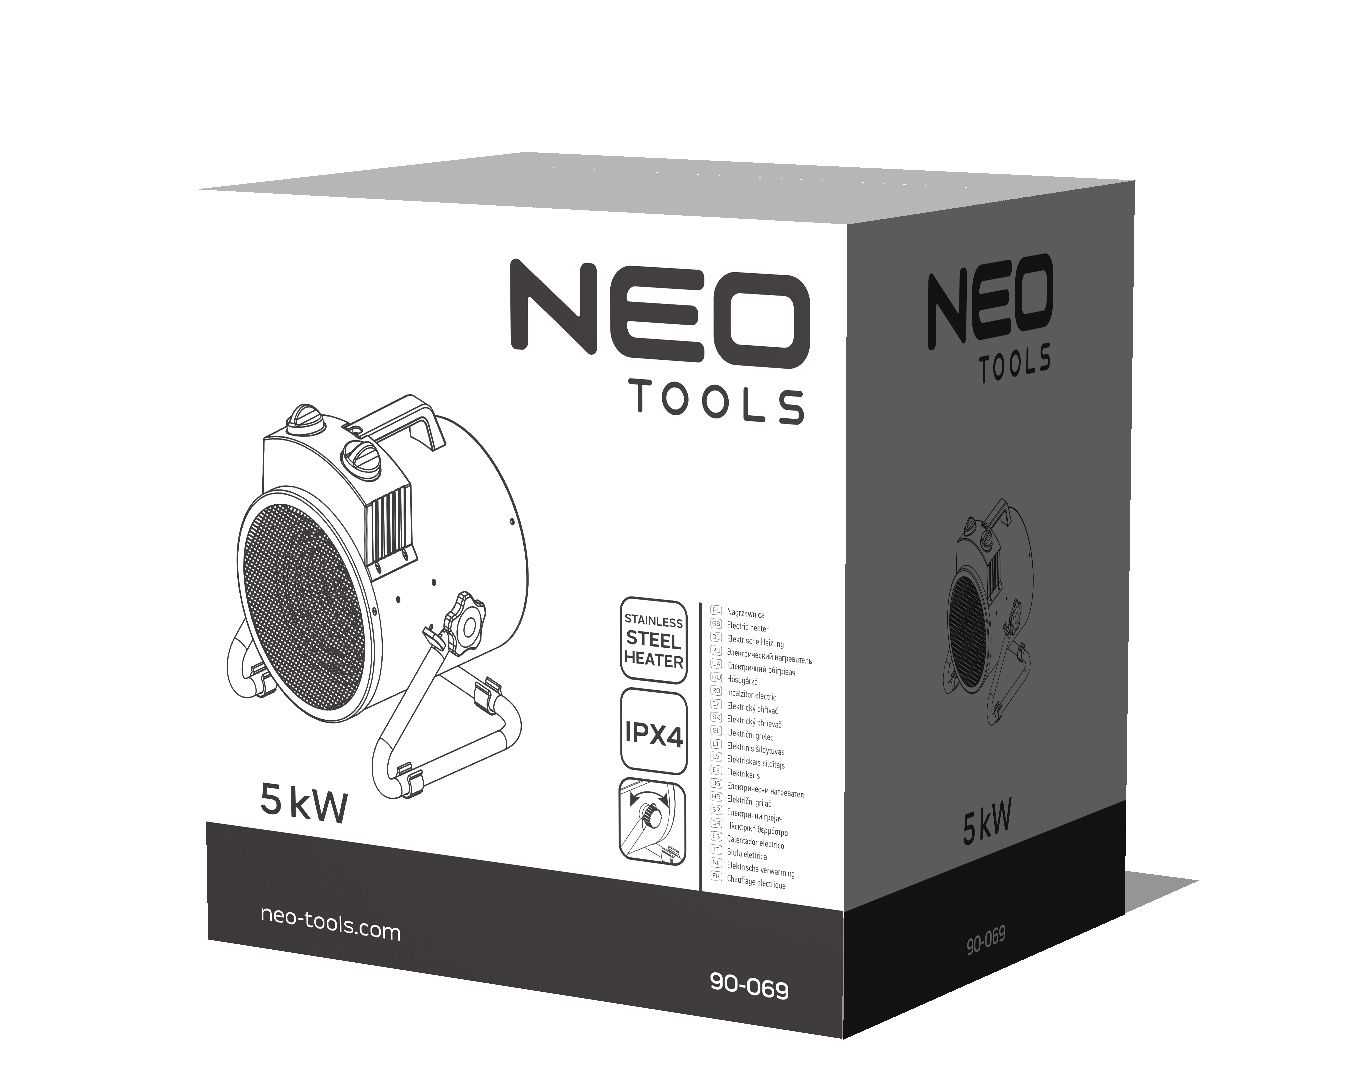 Тепловая пушка Neo Tools 90-069 характеристики - фотография 7